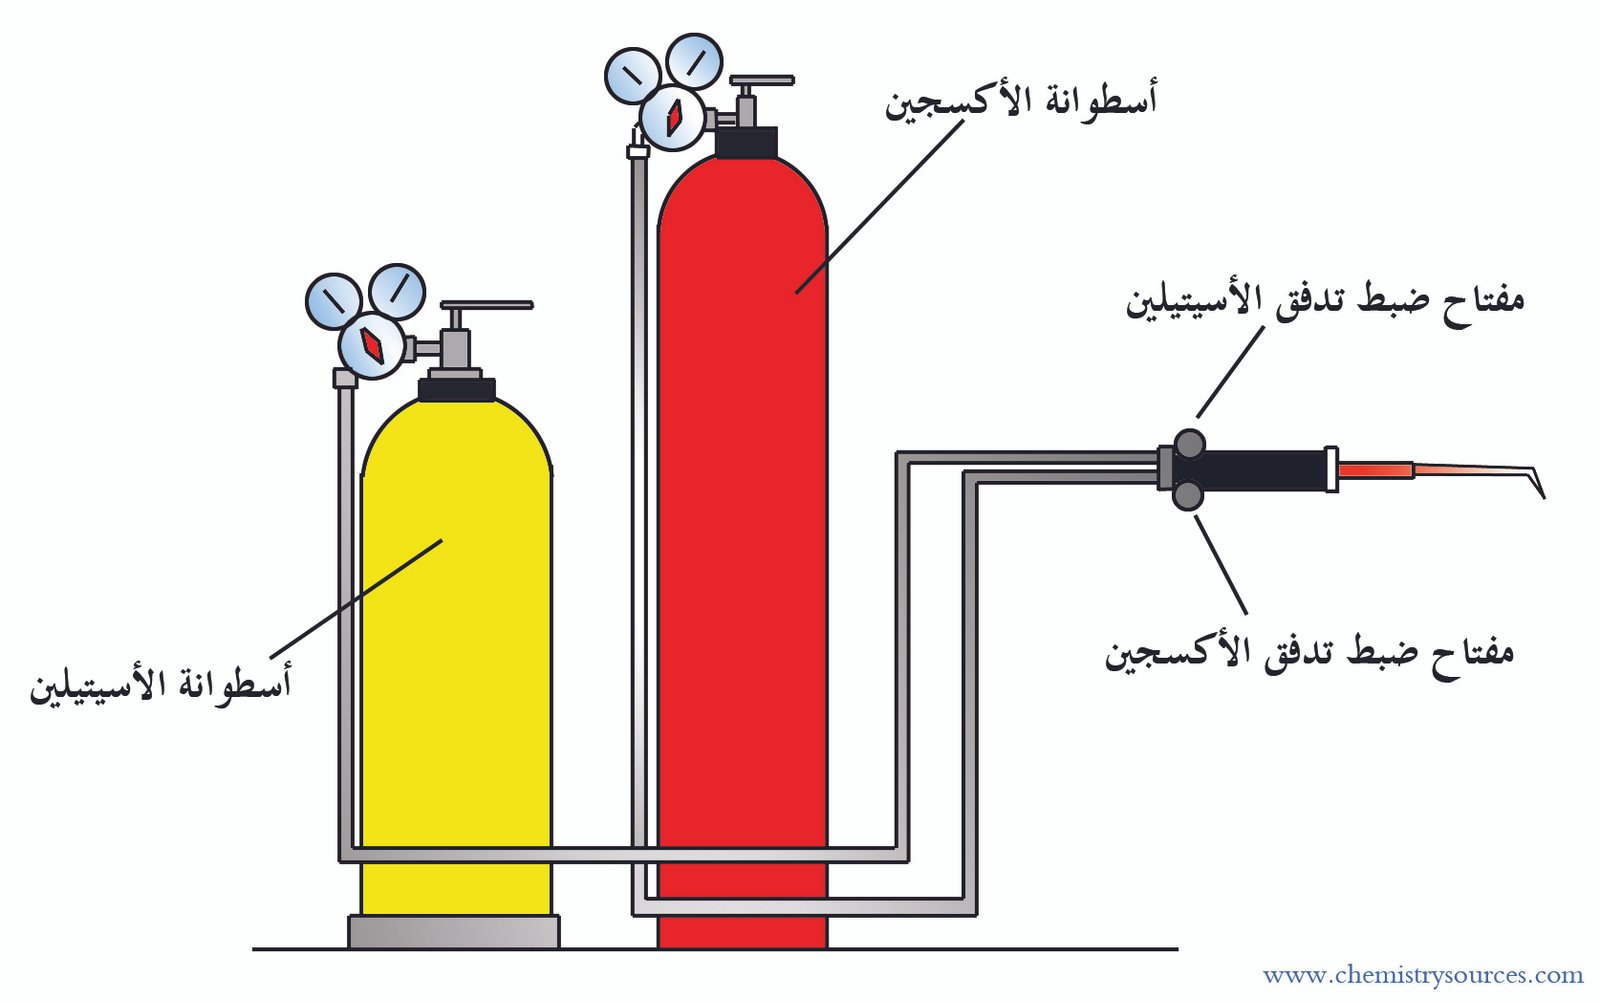 مشعل الأكسجين - الأسيتيلين (موقد الأكسجين - الأسيتيلين) Oxyacetylene Burner